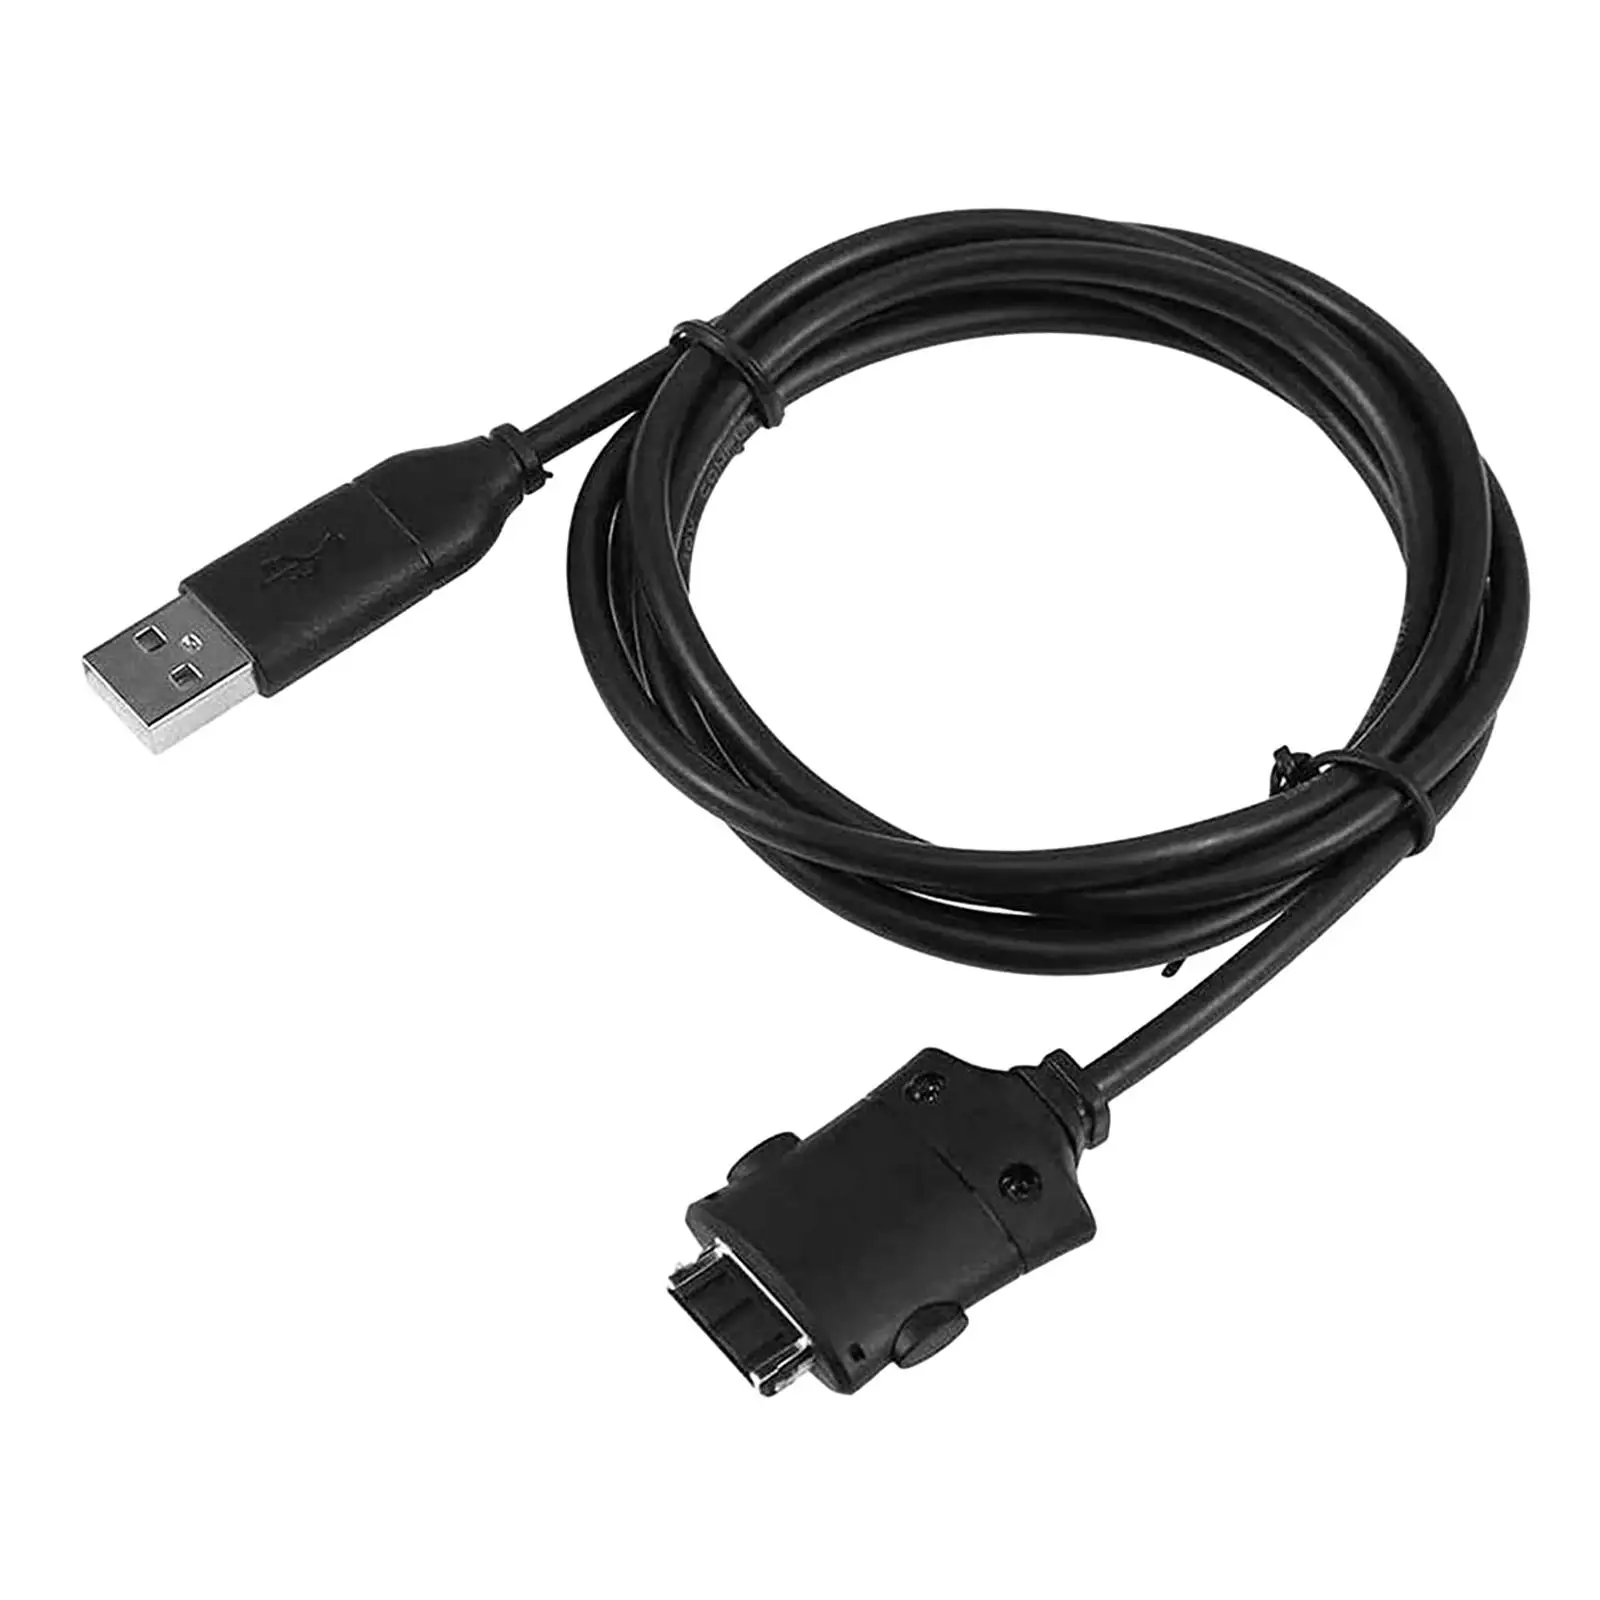 Suc-c2 USB Кабель Для Зарядки Данных Шнур Простой в Использовании Аксессуар Прочный Сменный Шнур для Передачи данных для Цифровой Камеры i85 L83T L70 i6 - 0